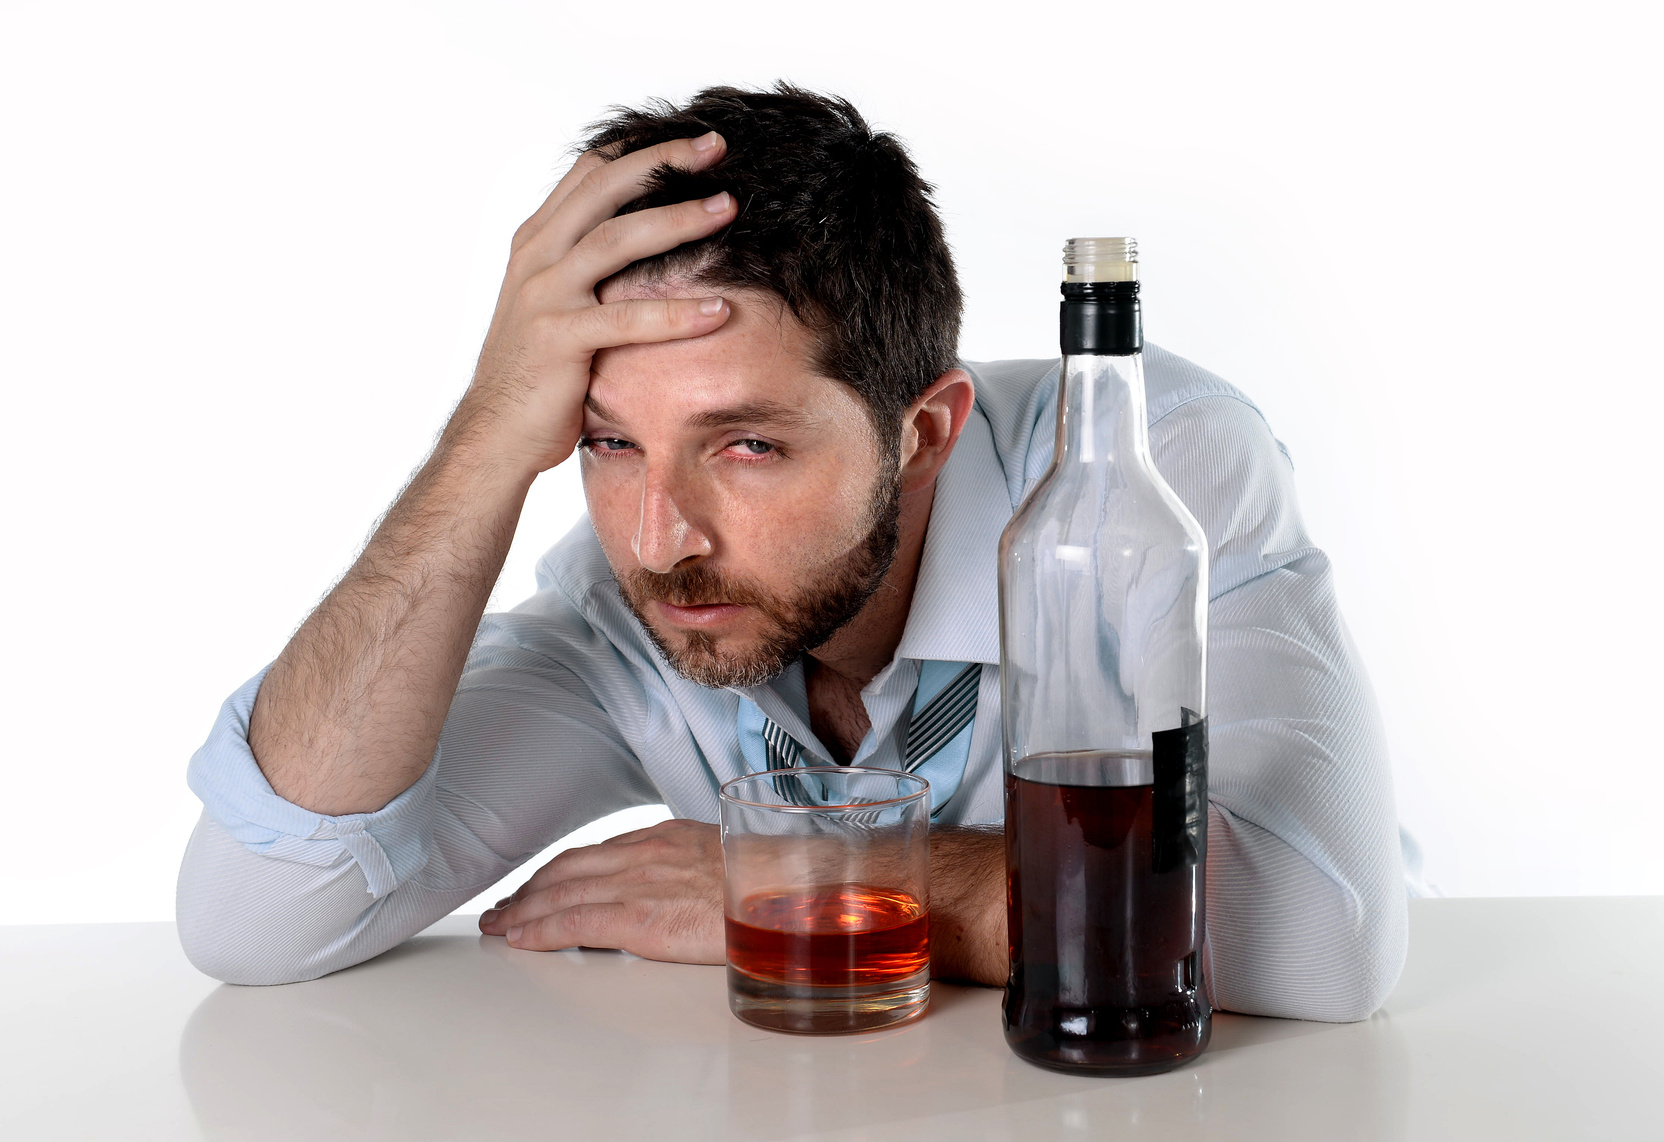 Алкоголизм: серьезная угроза здоровью и благополучию